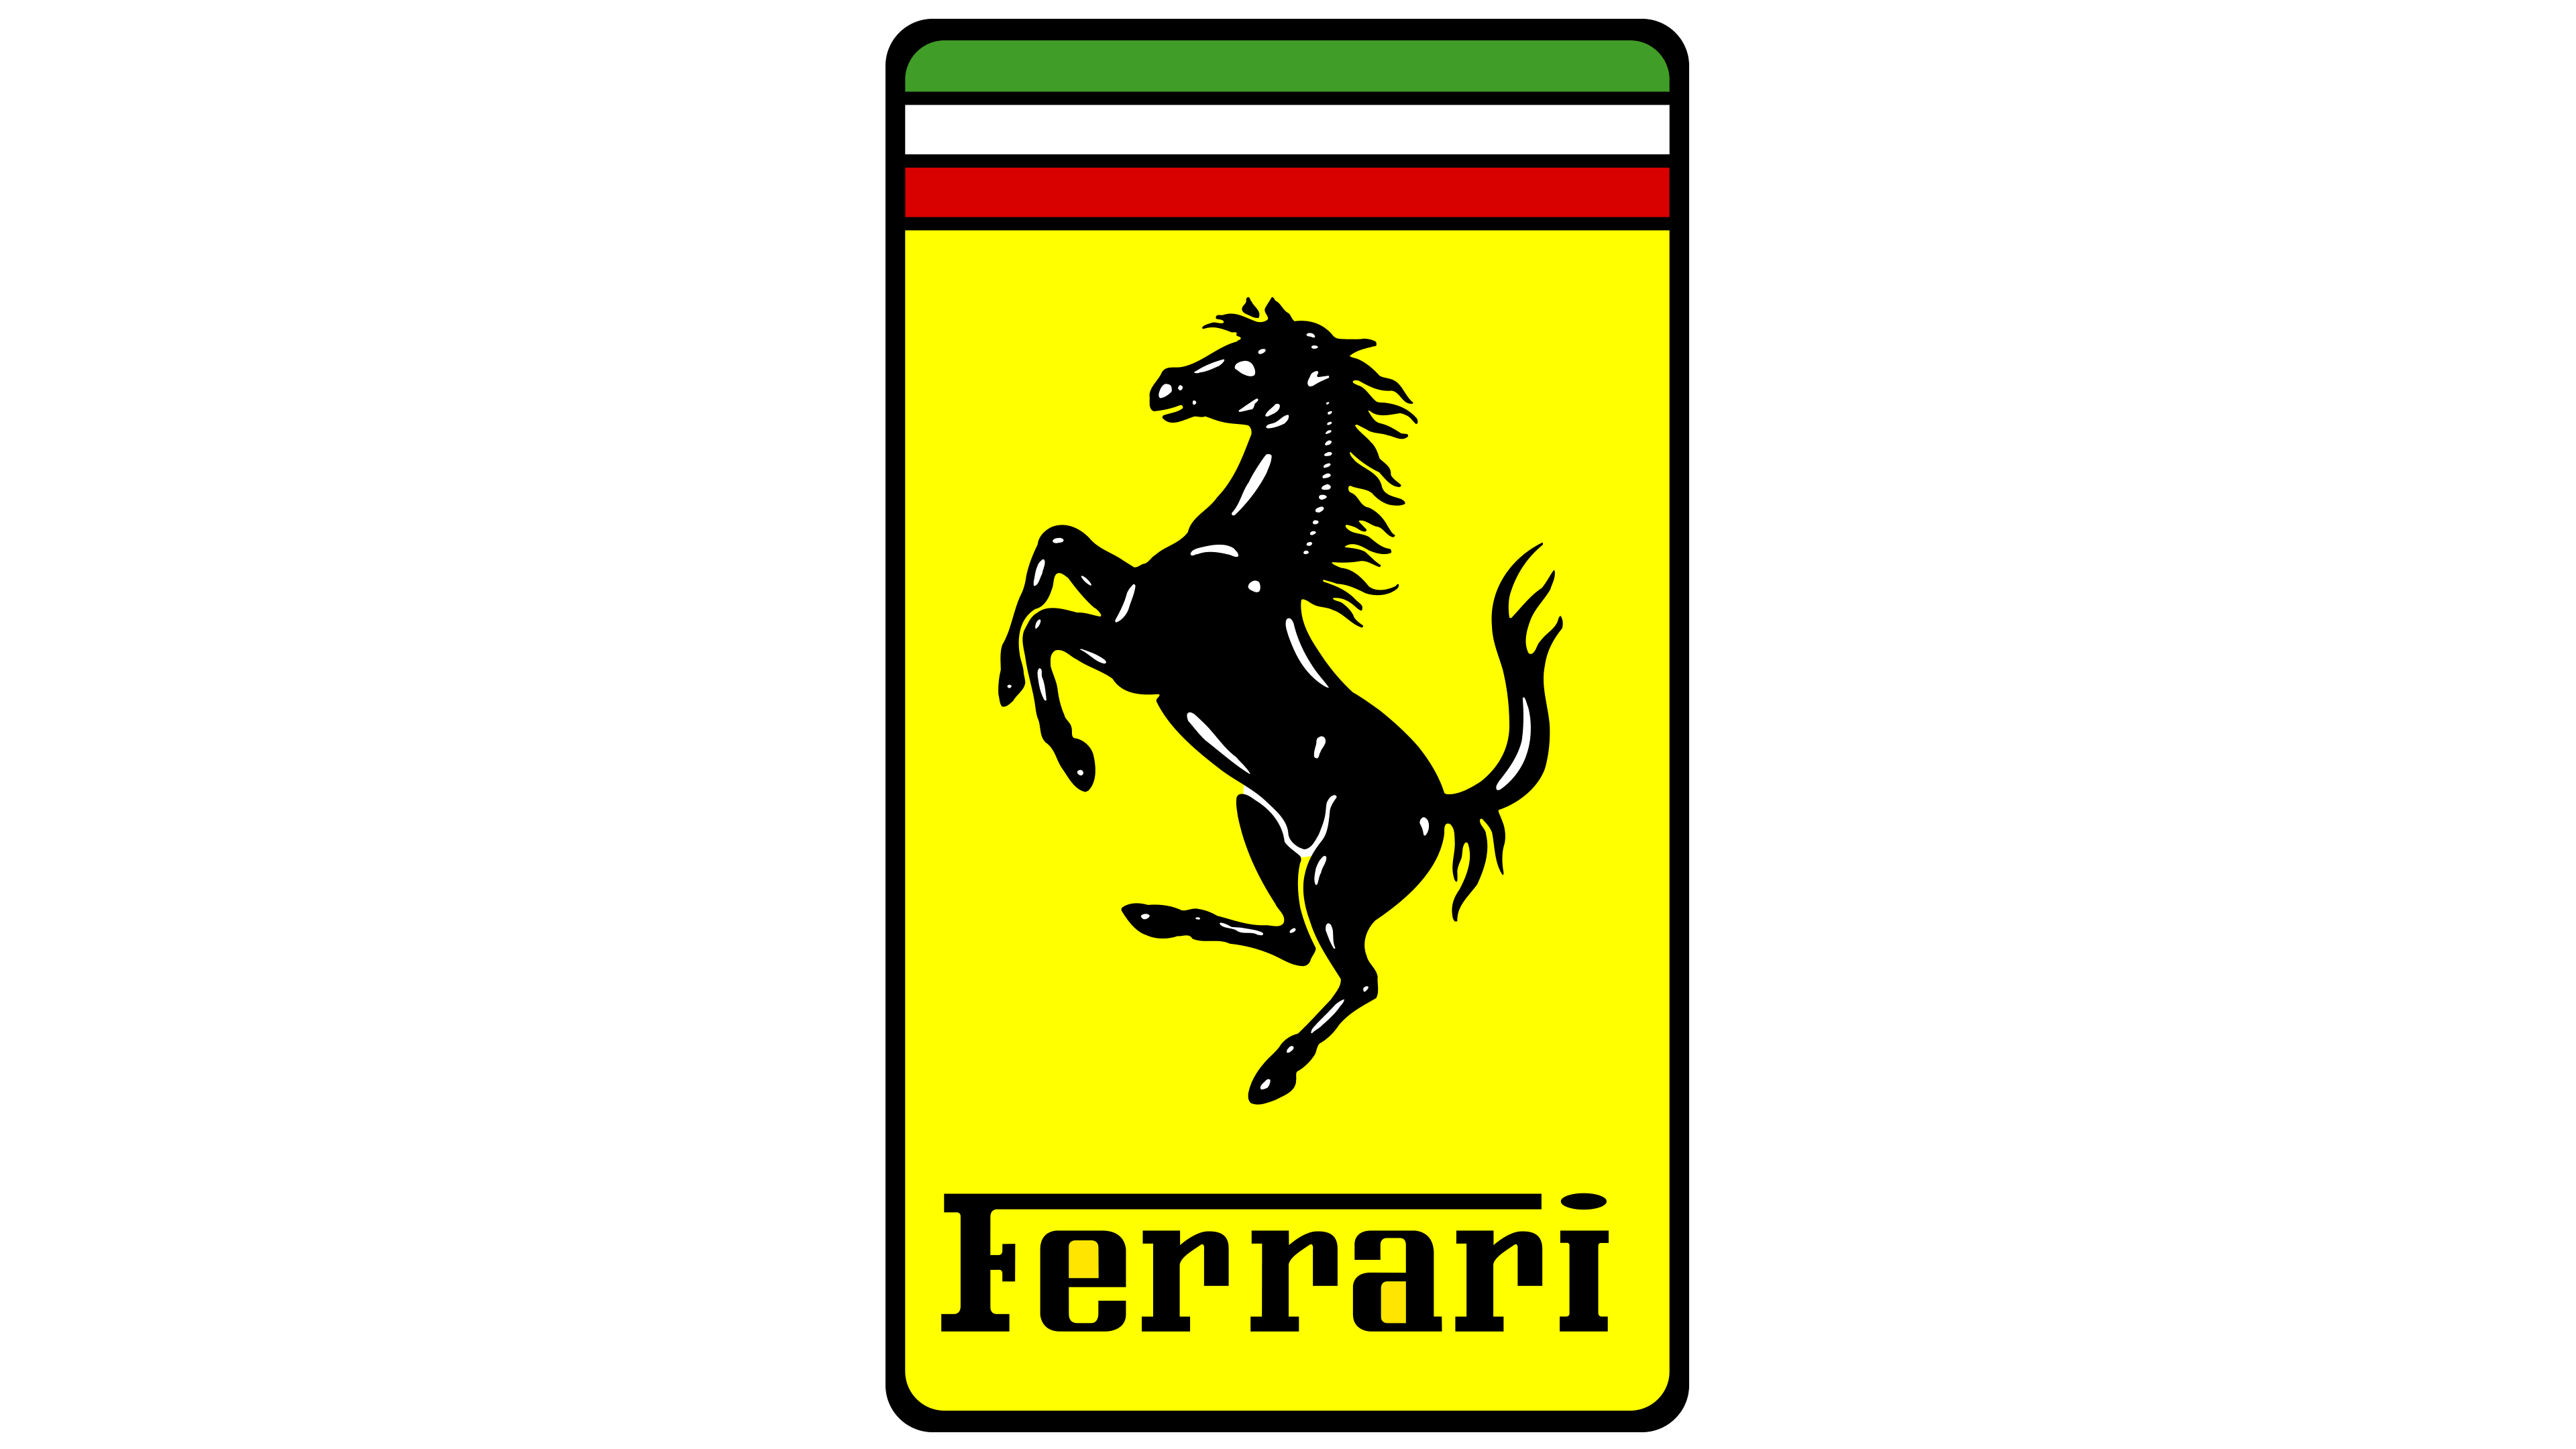 Ferrari – ARMTWKZ